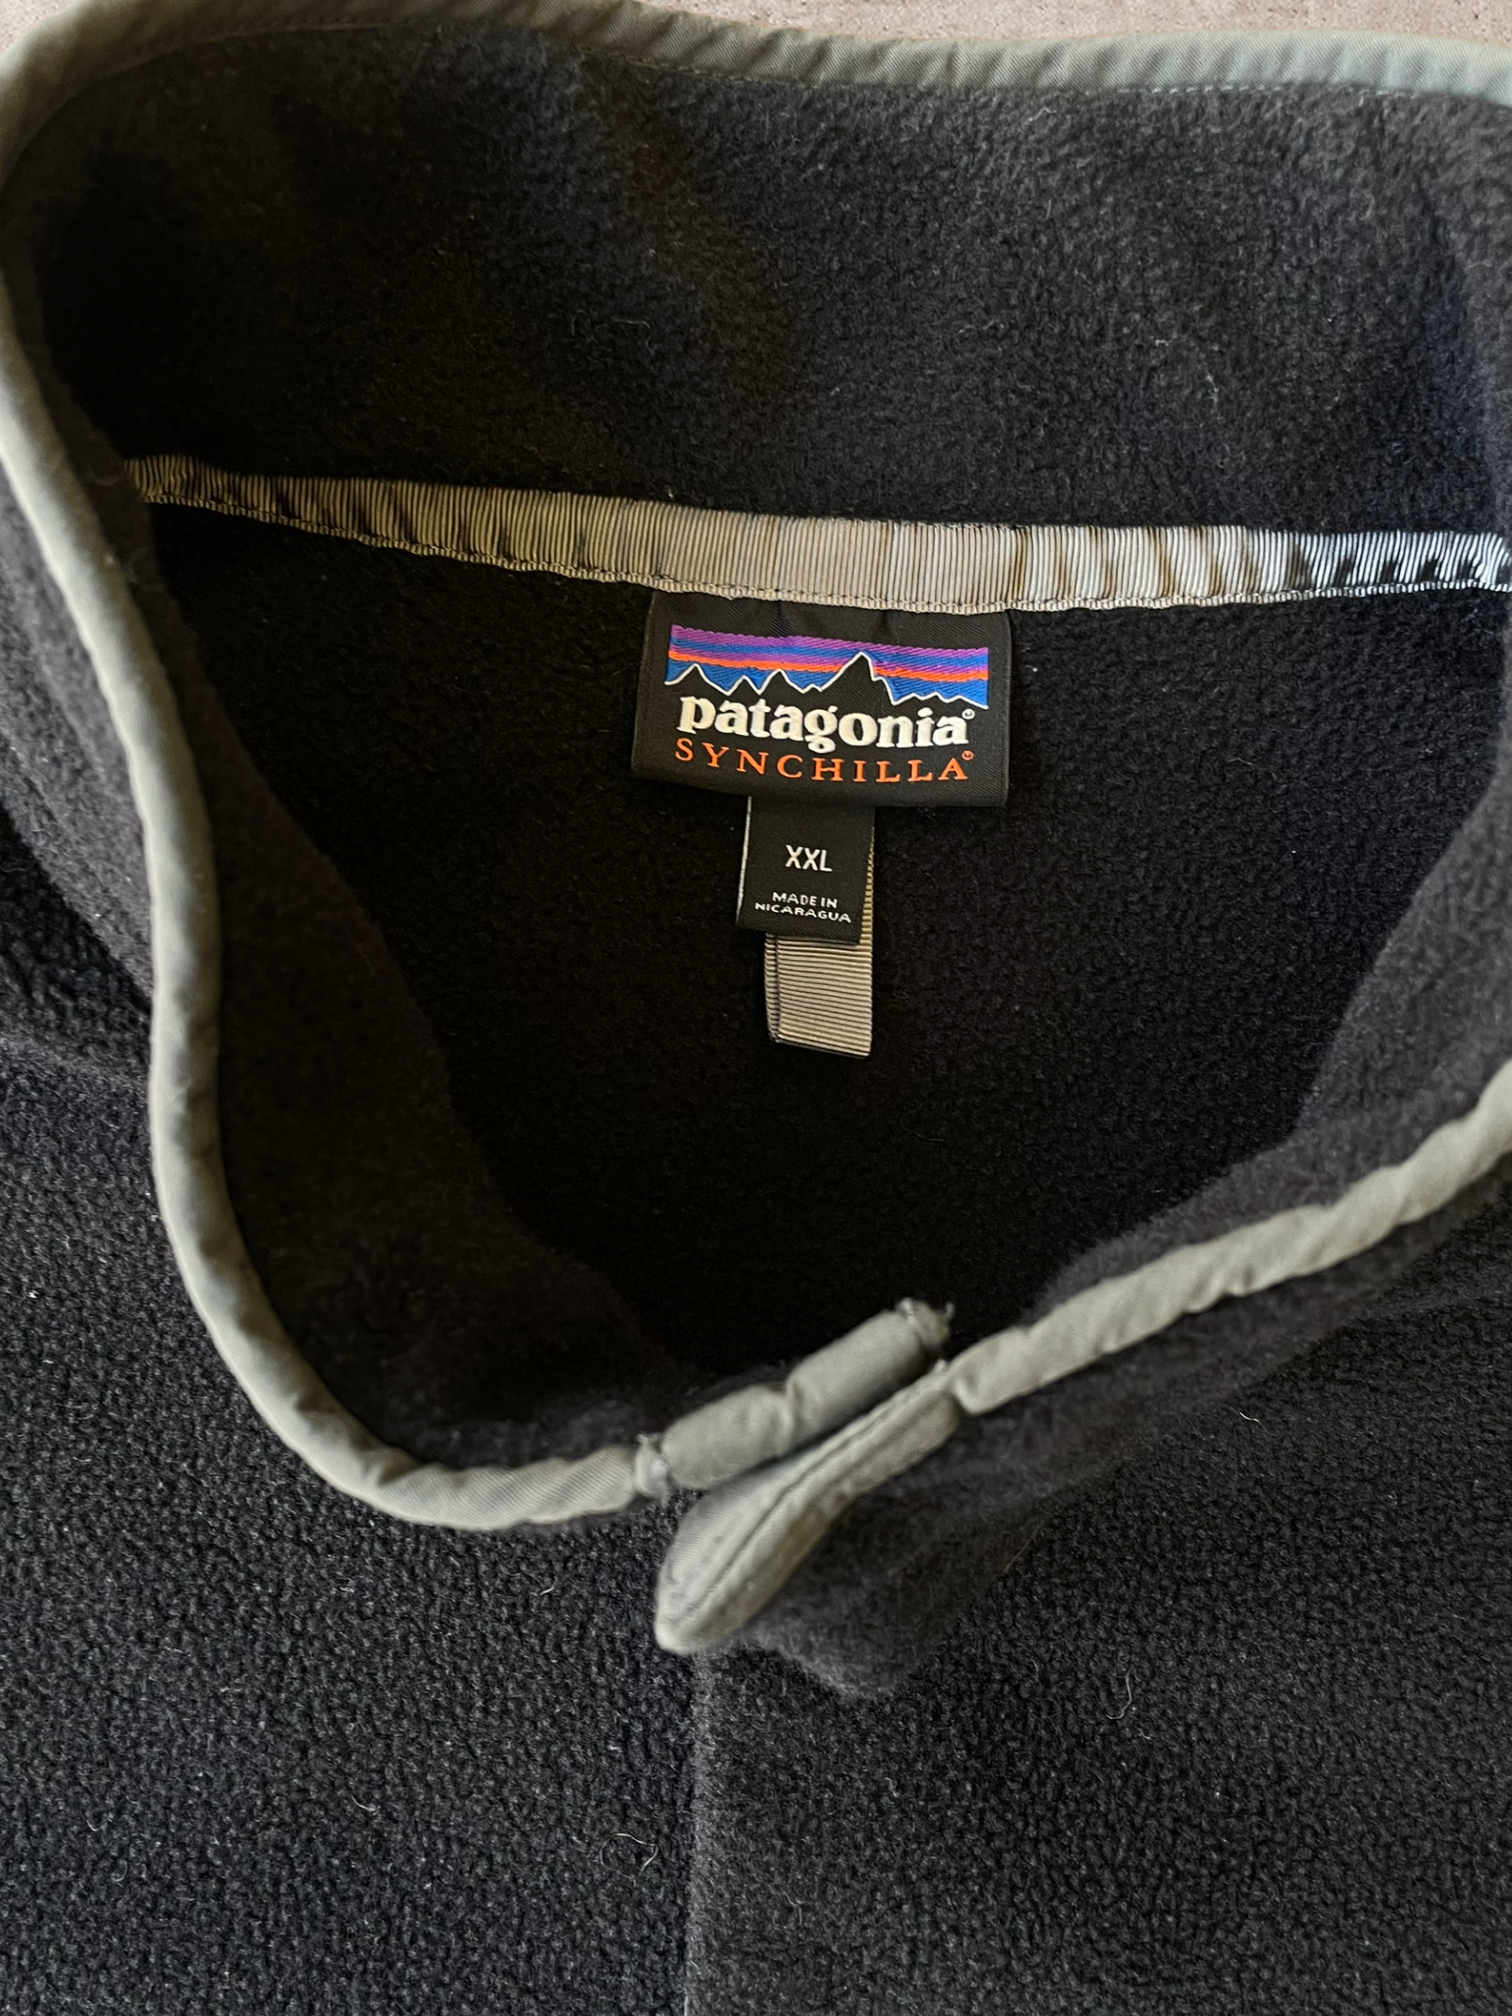 Patagonia Synchilla Fleece Jacket - XXL